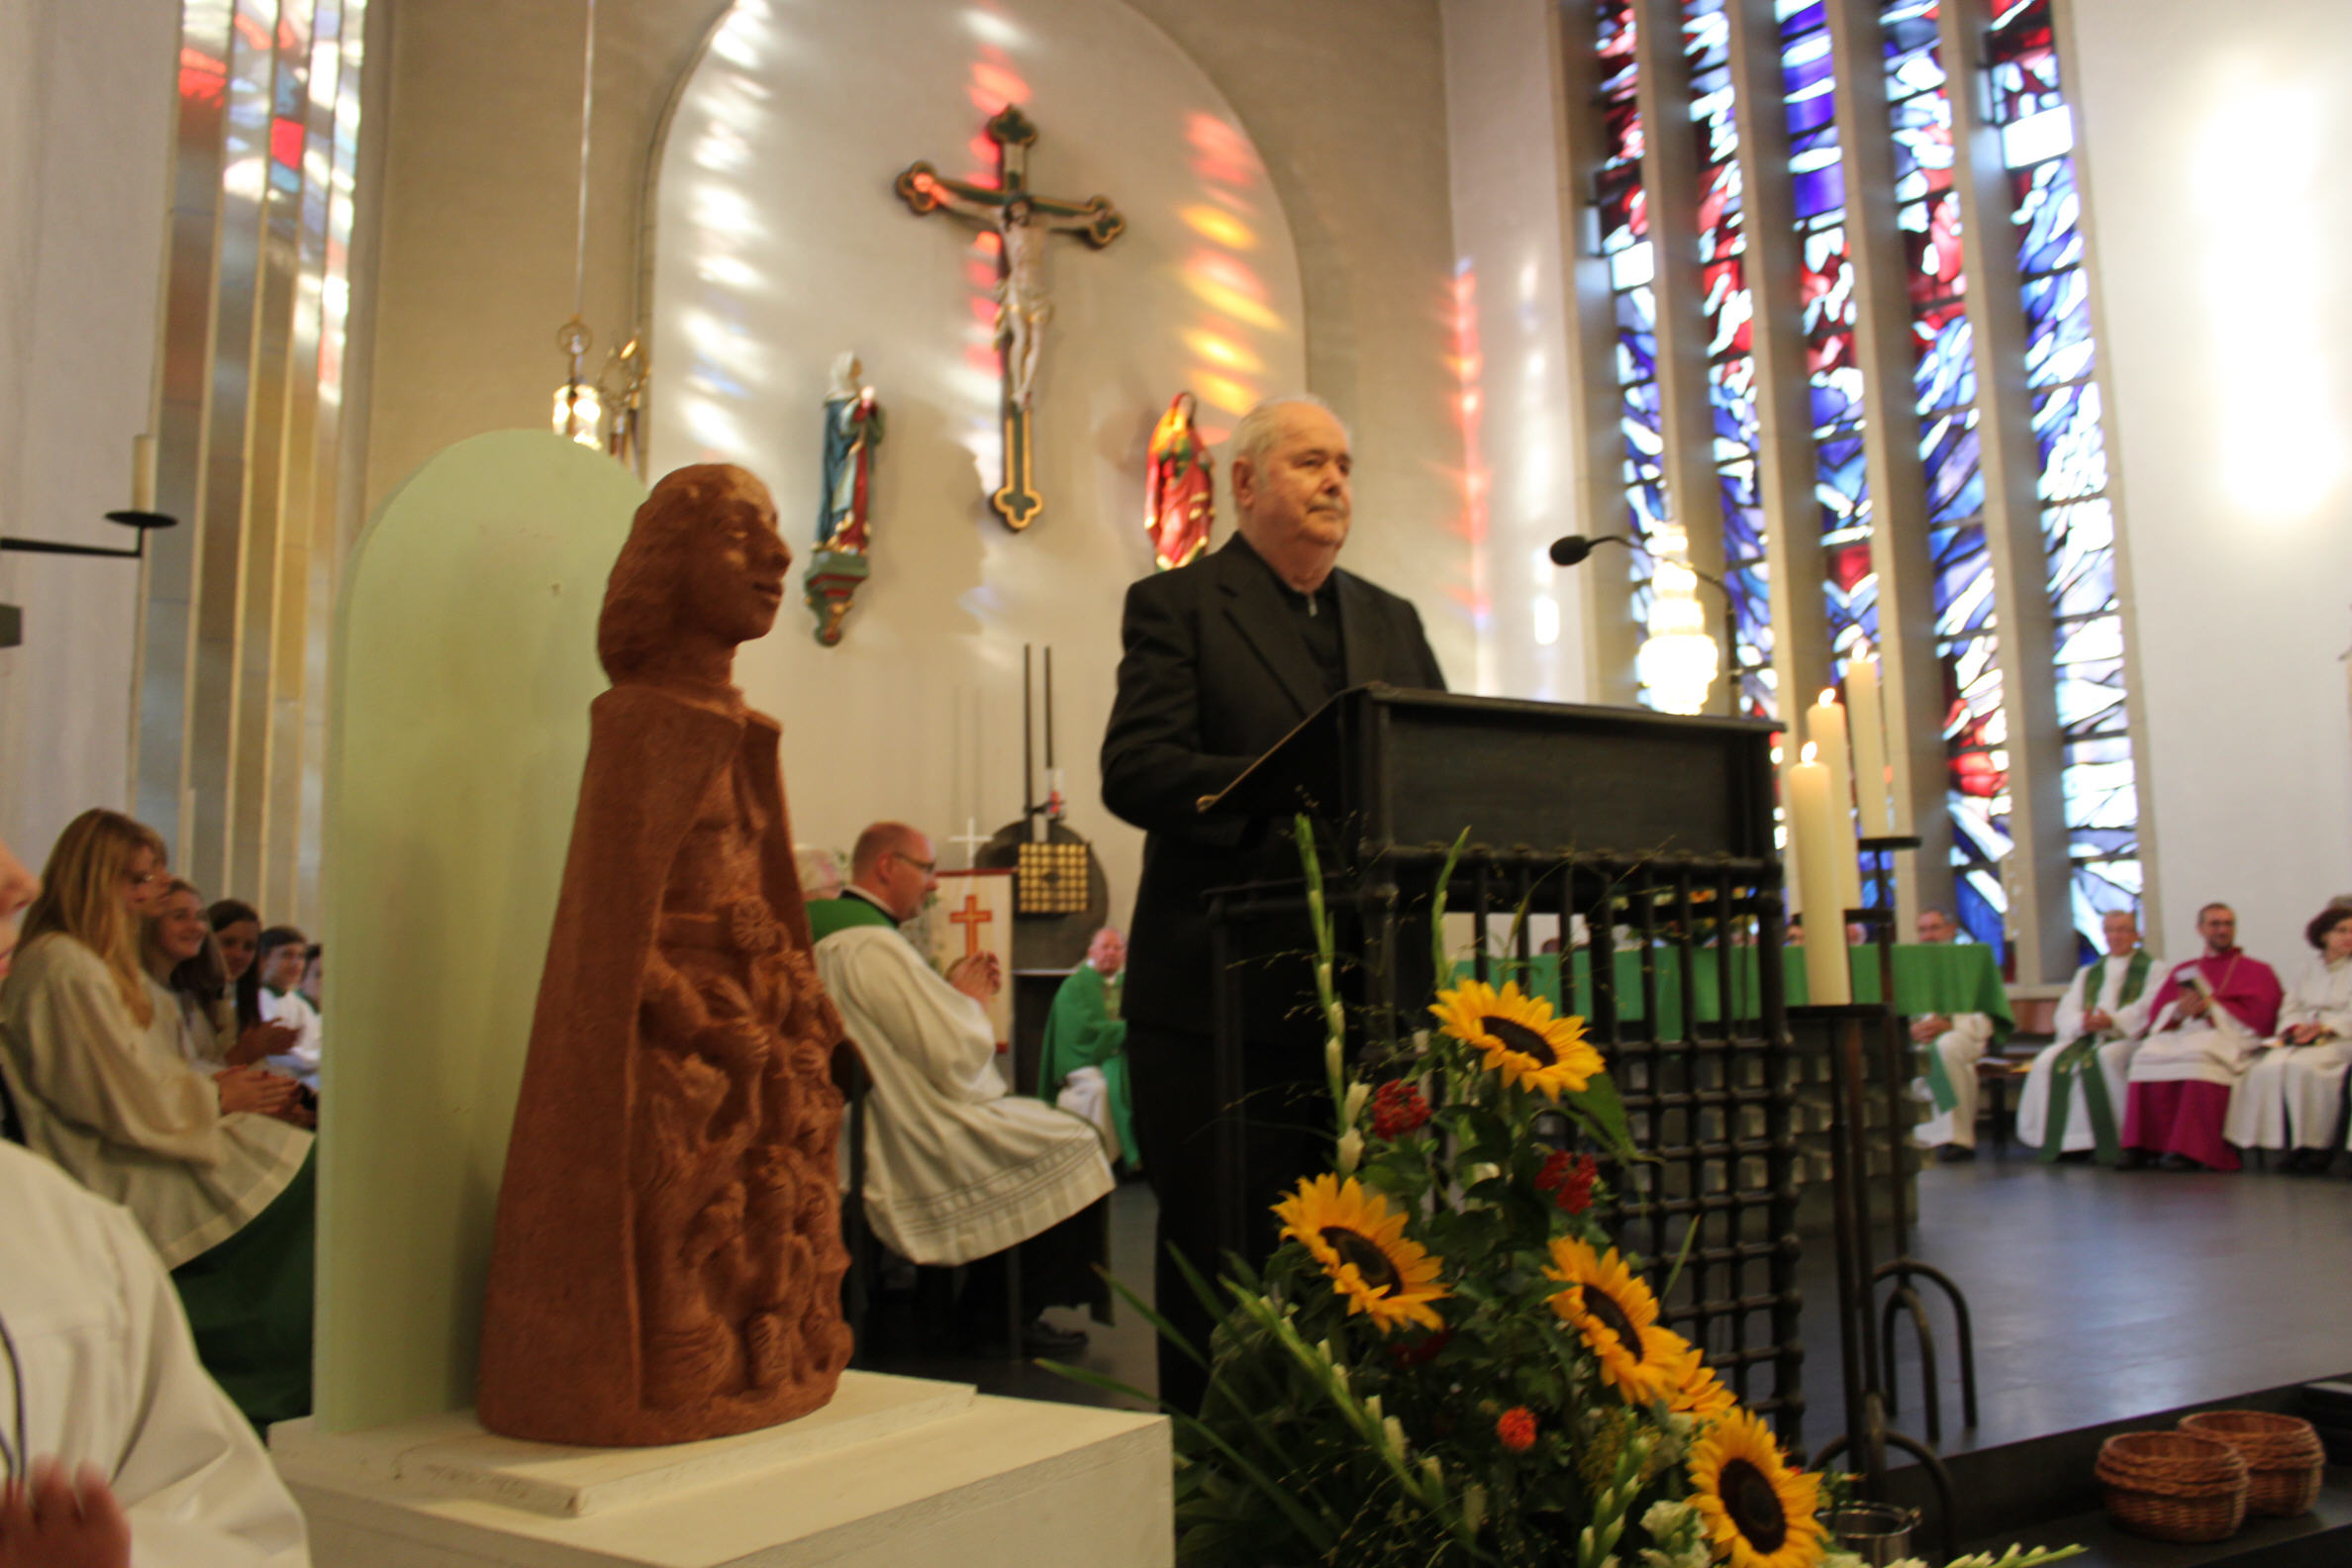 Pater Franz Josef Ludwig schenkt Gemeinde zum Abschied Figur des Vinzenz Pallotti